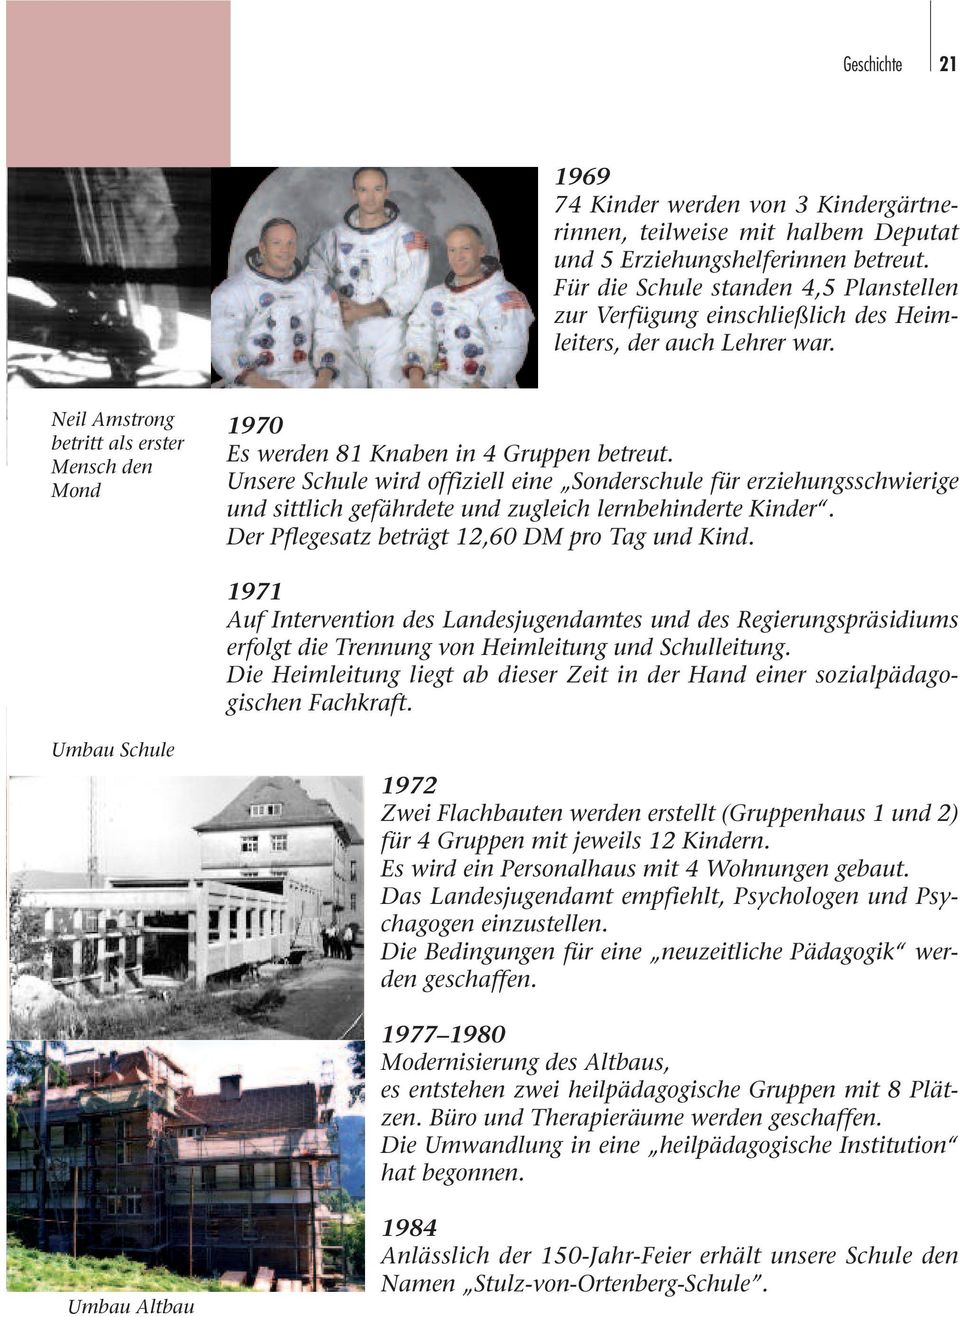 Neil Amstrong betritt als erster Mensch den Mond 1970 Es werden 81 Knaben in 4 Gruppen betreut.